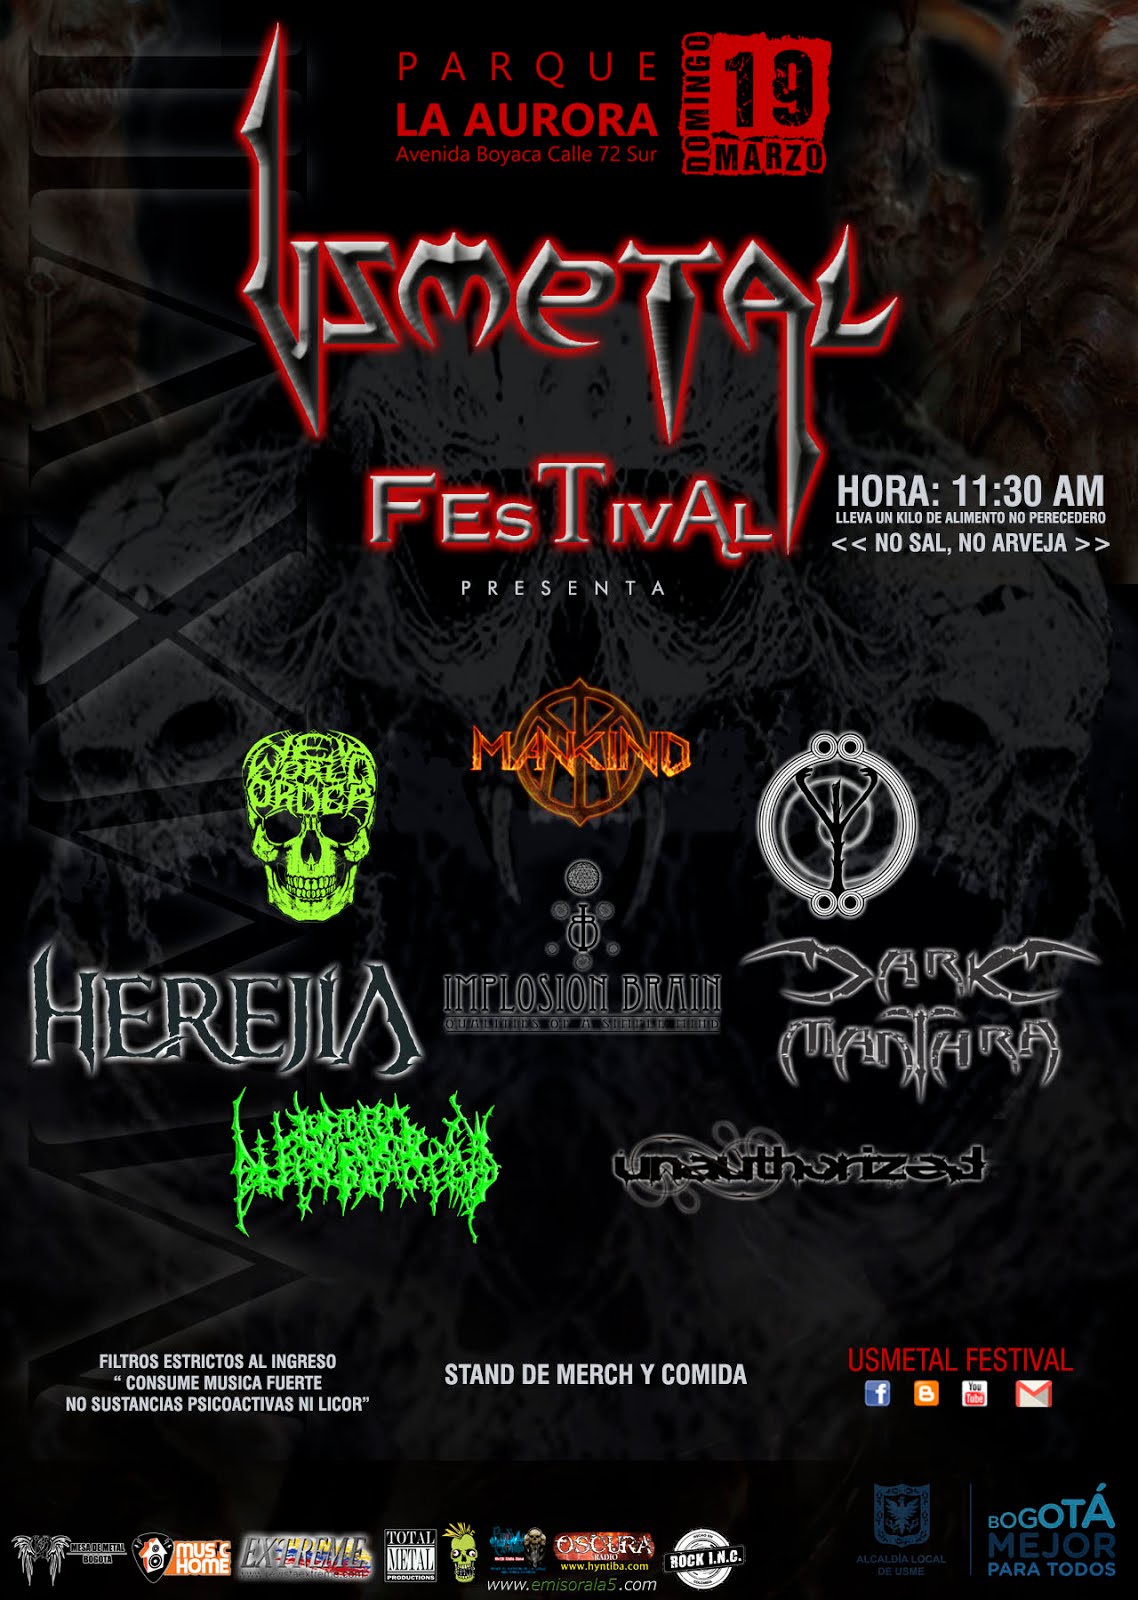 Usmetal Festival 2017